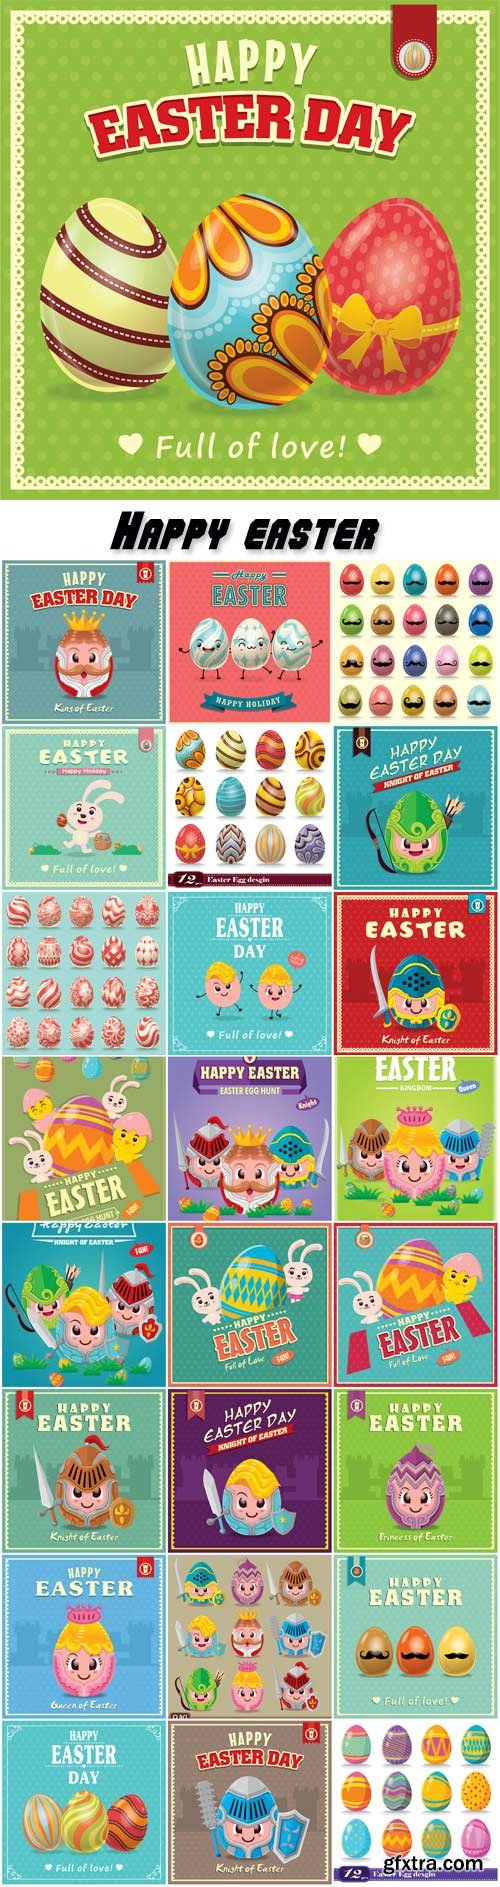 Vintage Easter egg poster design